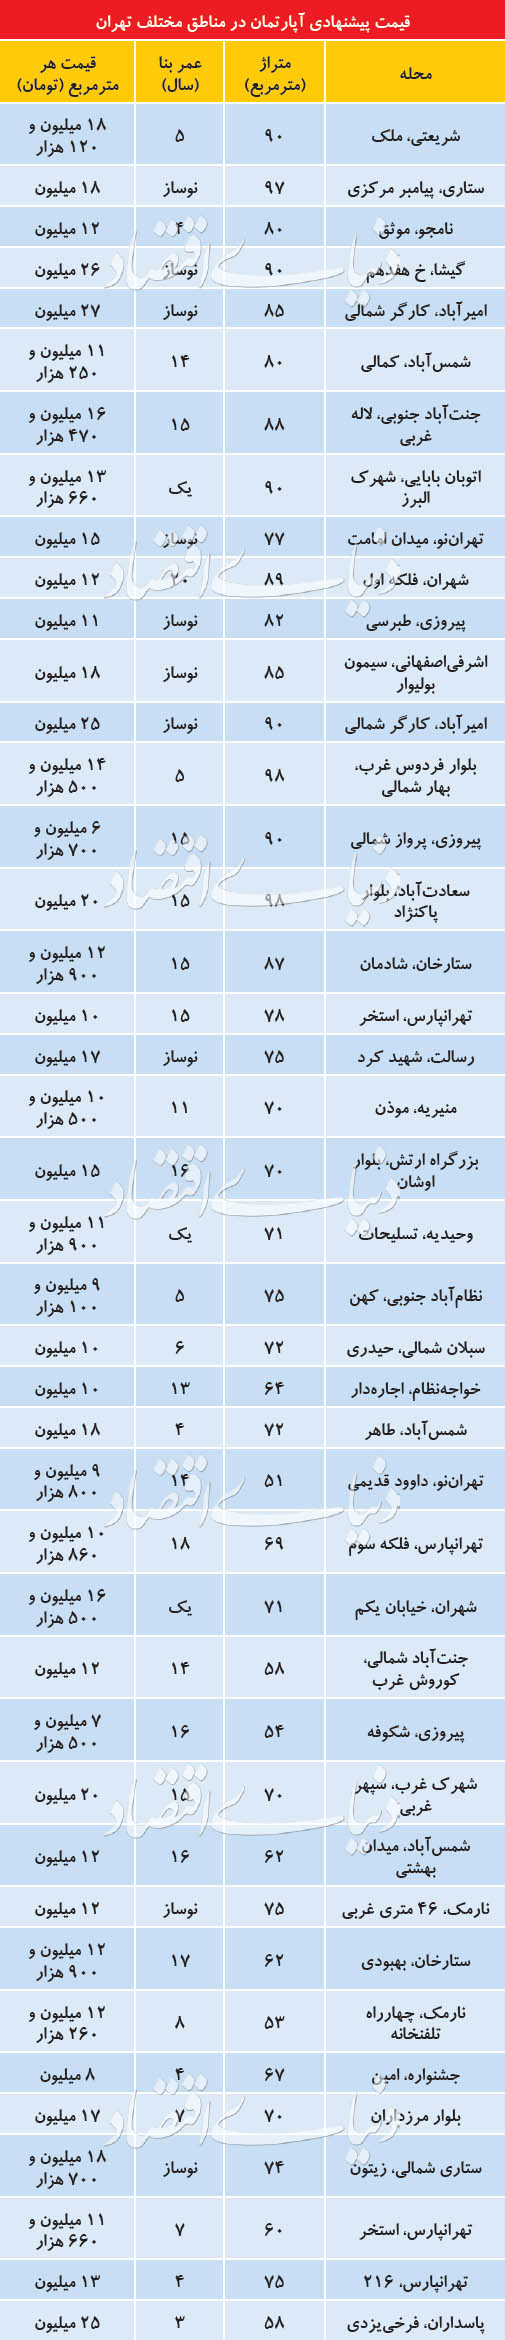 قیمت پیشنهادی آپارتمان در مناطق مختلف تهران